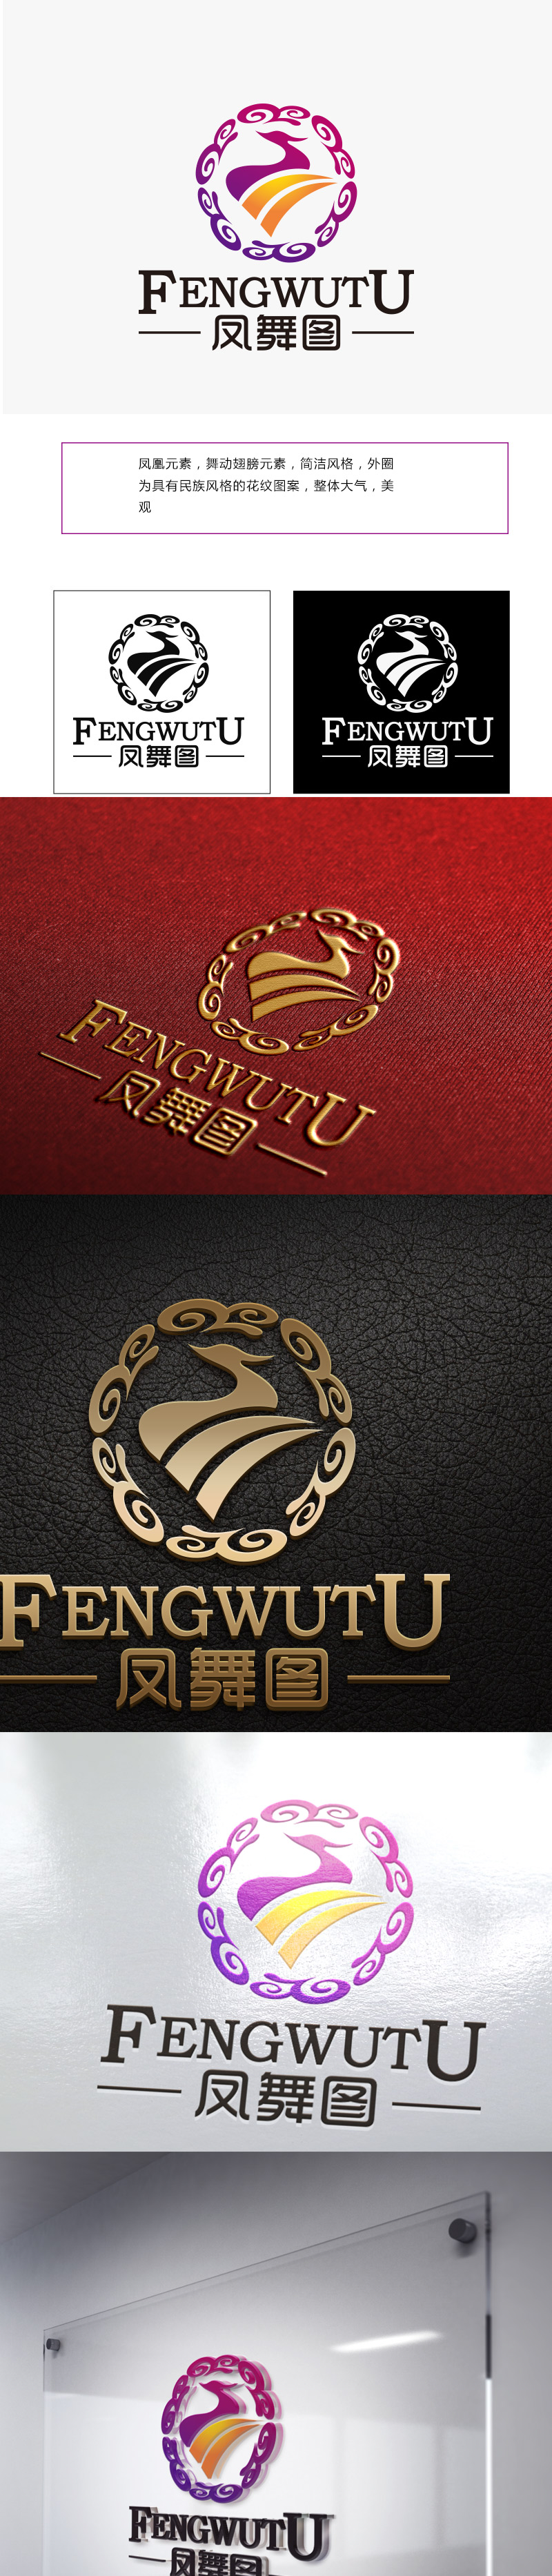 向正军的深圳市凤舞图舞蹈文化艺术培训有限公司logo设计